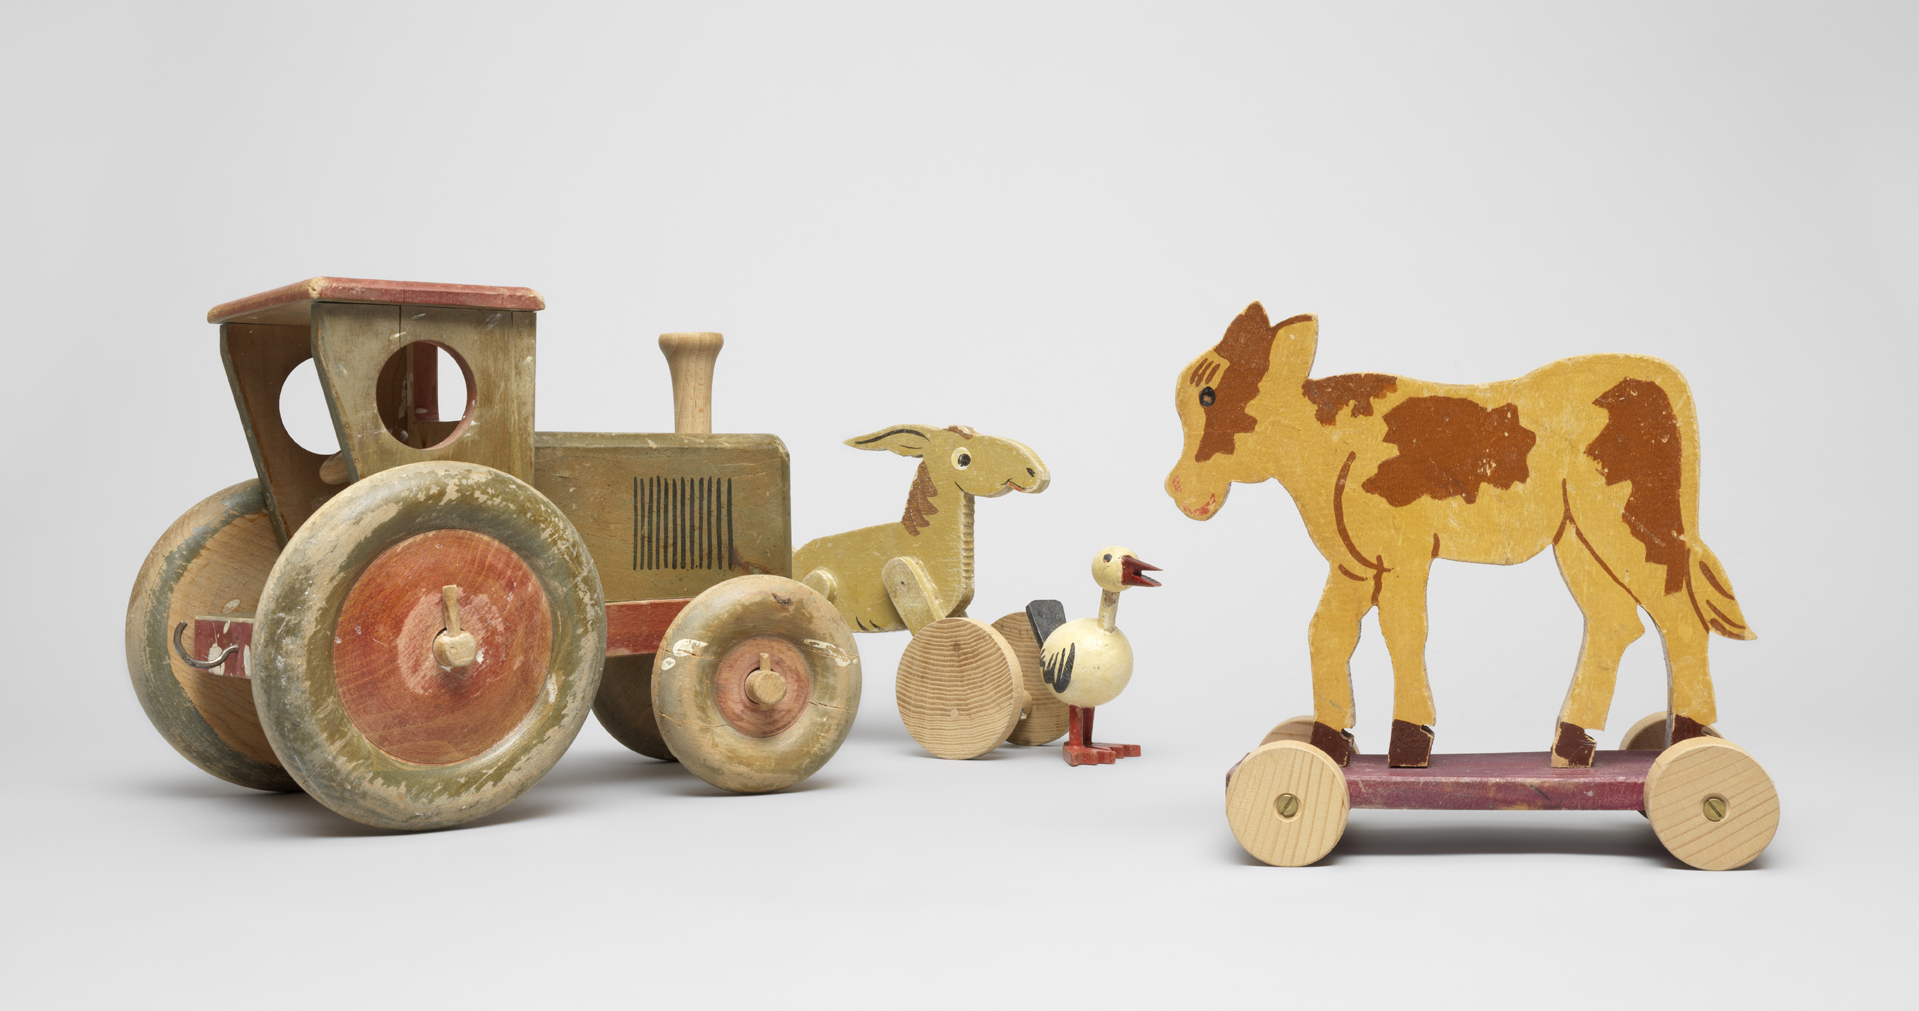 Spielwaren aus der Produktion der Firma Heinz, 1920er-/1940er-Jahre.